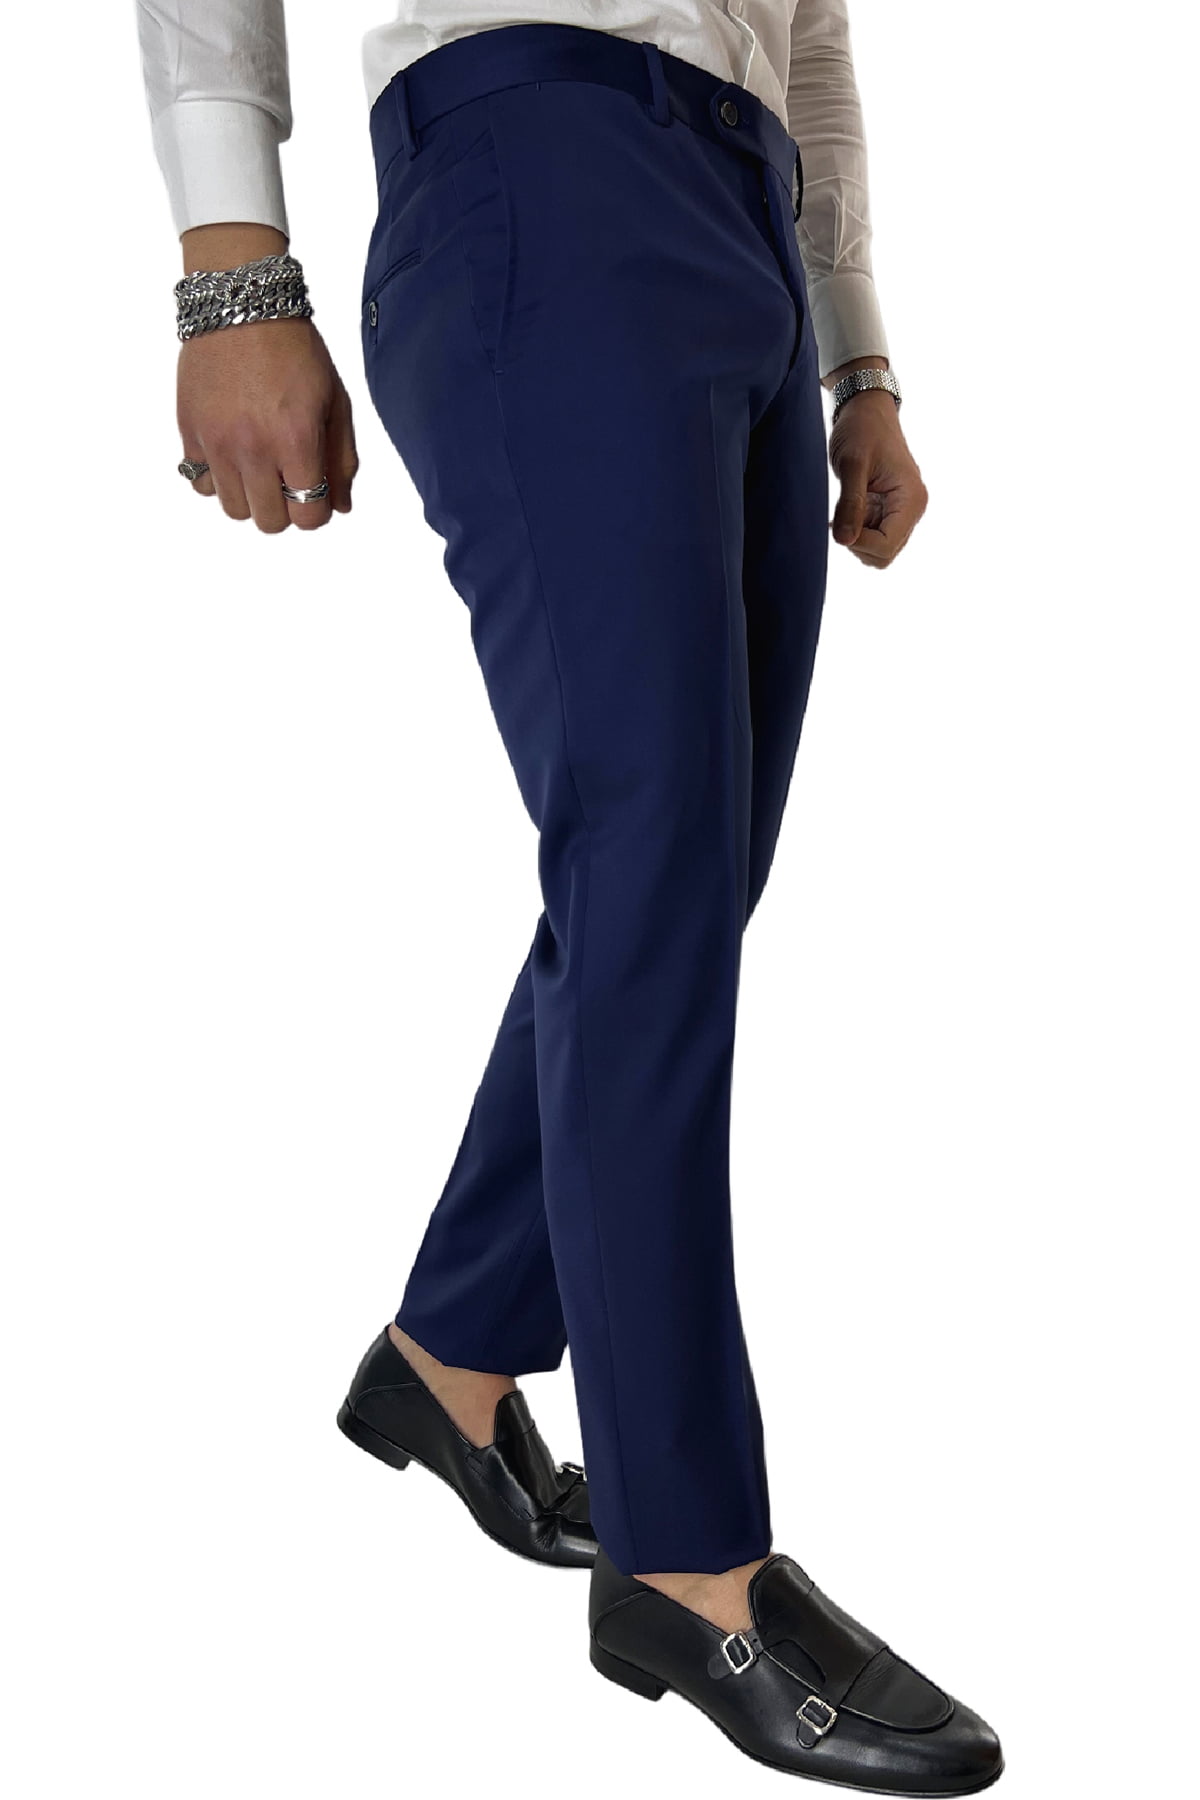 Pantalone uomo royal blu tasca america in fresco lana 100% Vitale Barberis Canonico